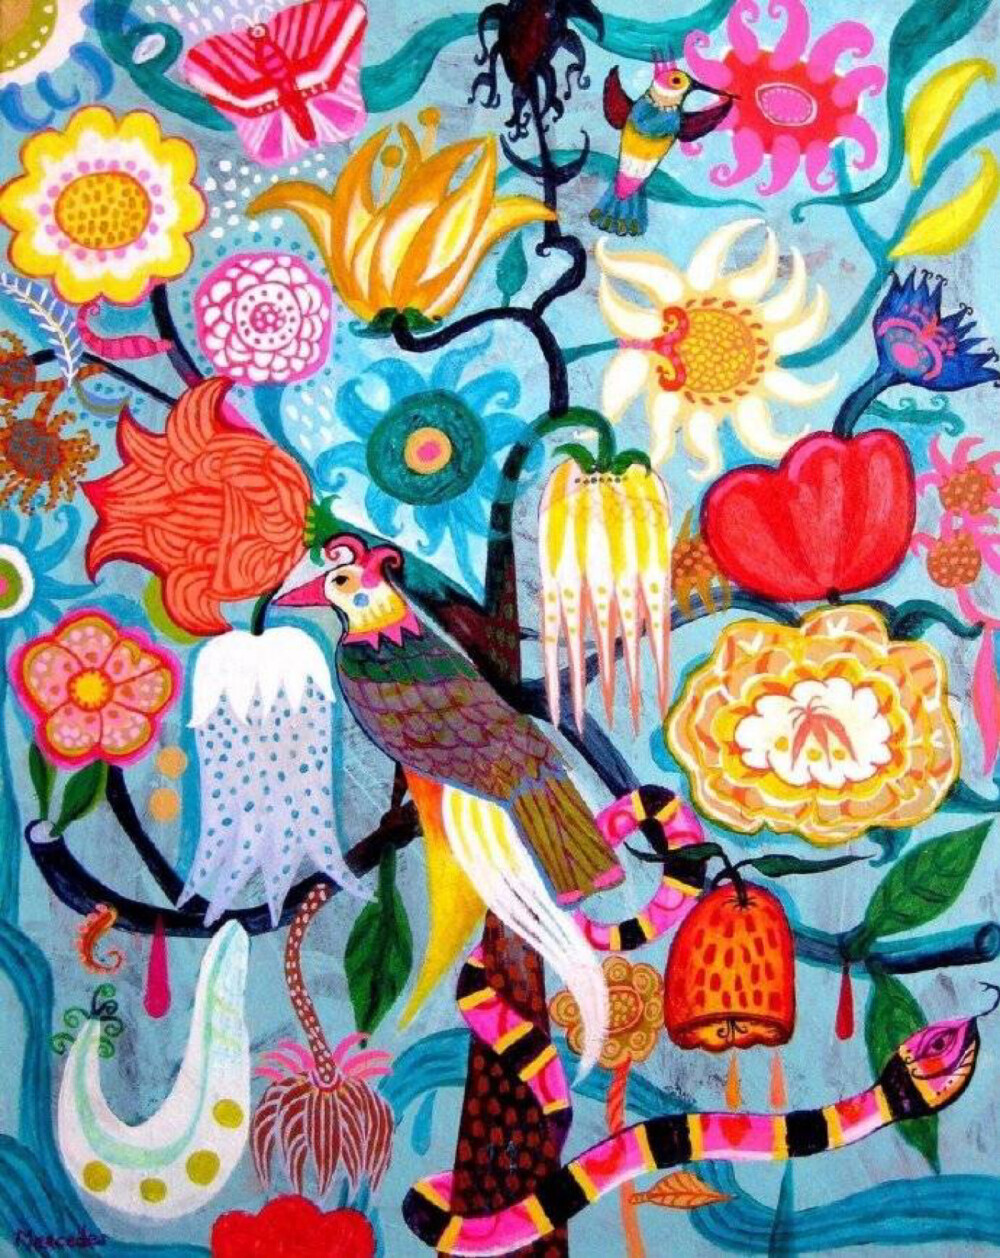 艺术家Mercedes Lagunas色彩明艳的丙烯酸插画 ​​​